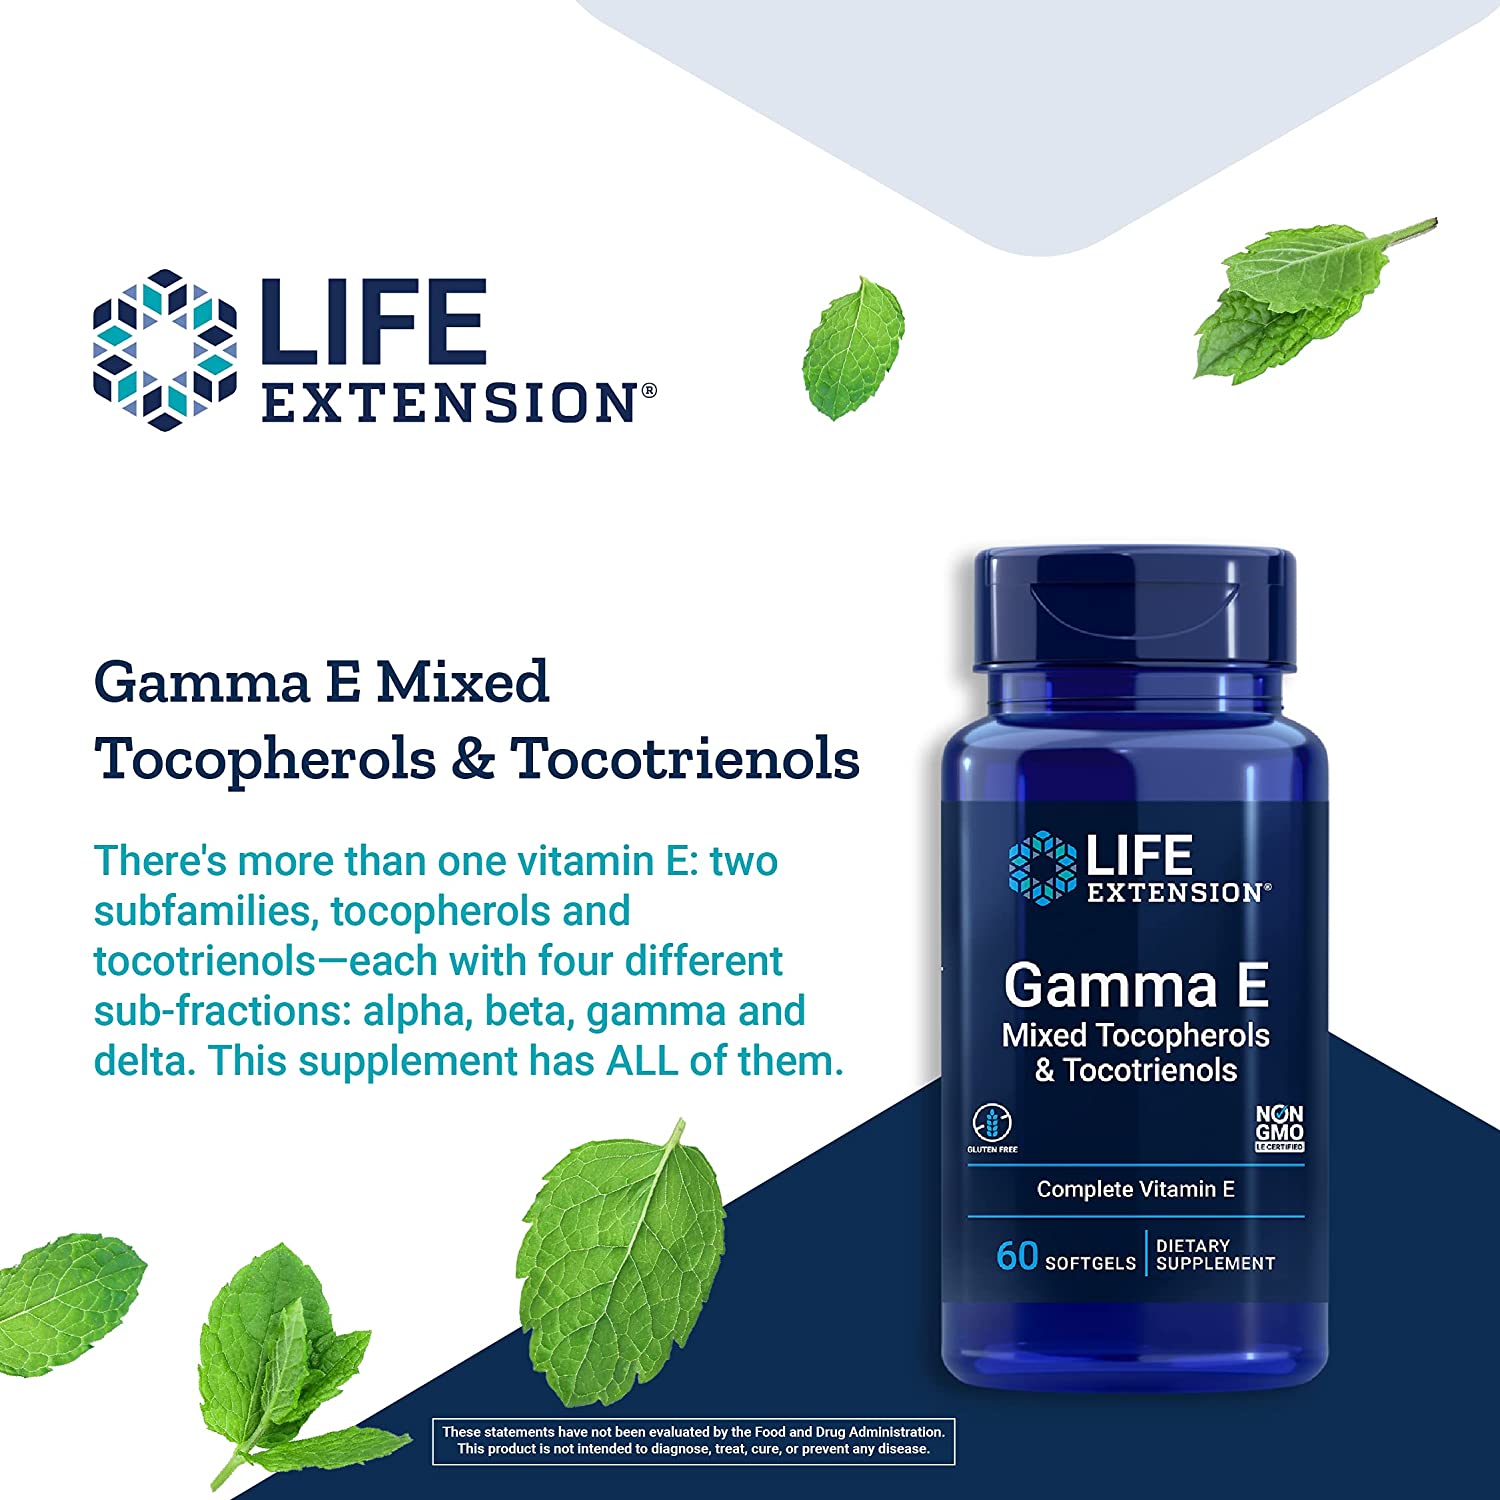 Life Extension Gamma E Mixed Tocopherols/Tocotrienols 60C